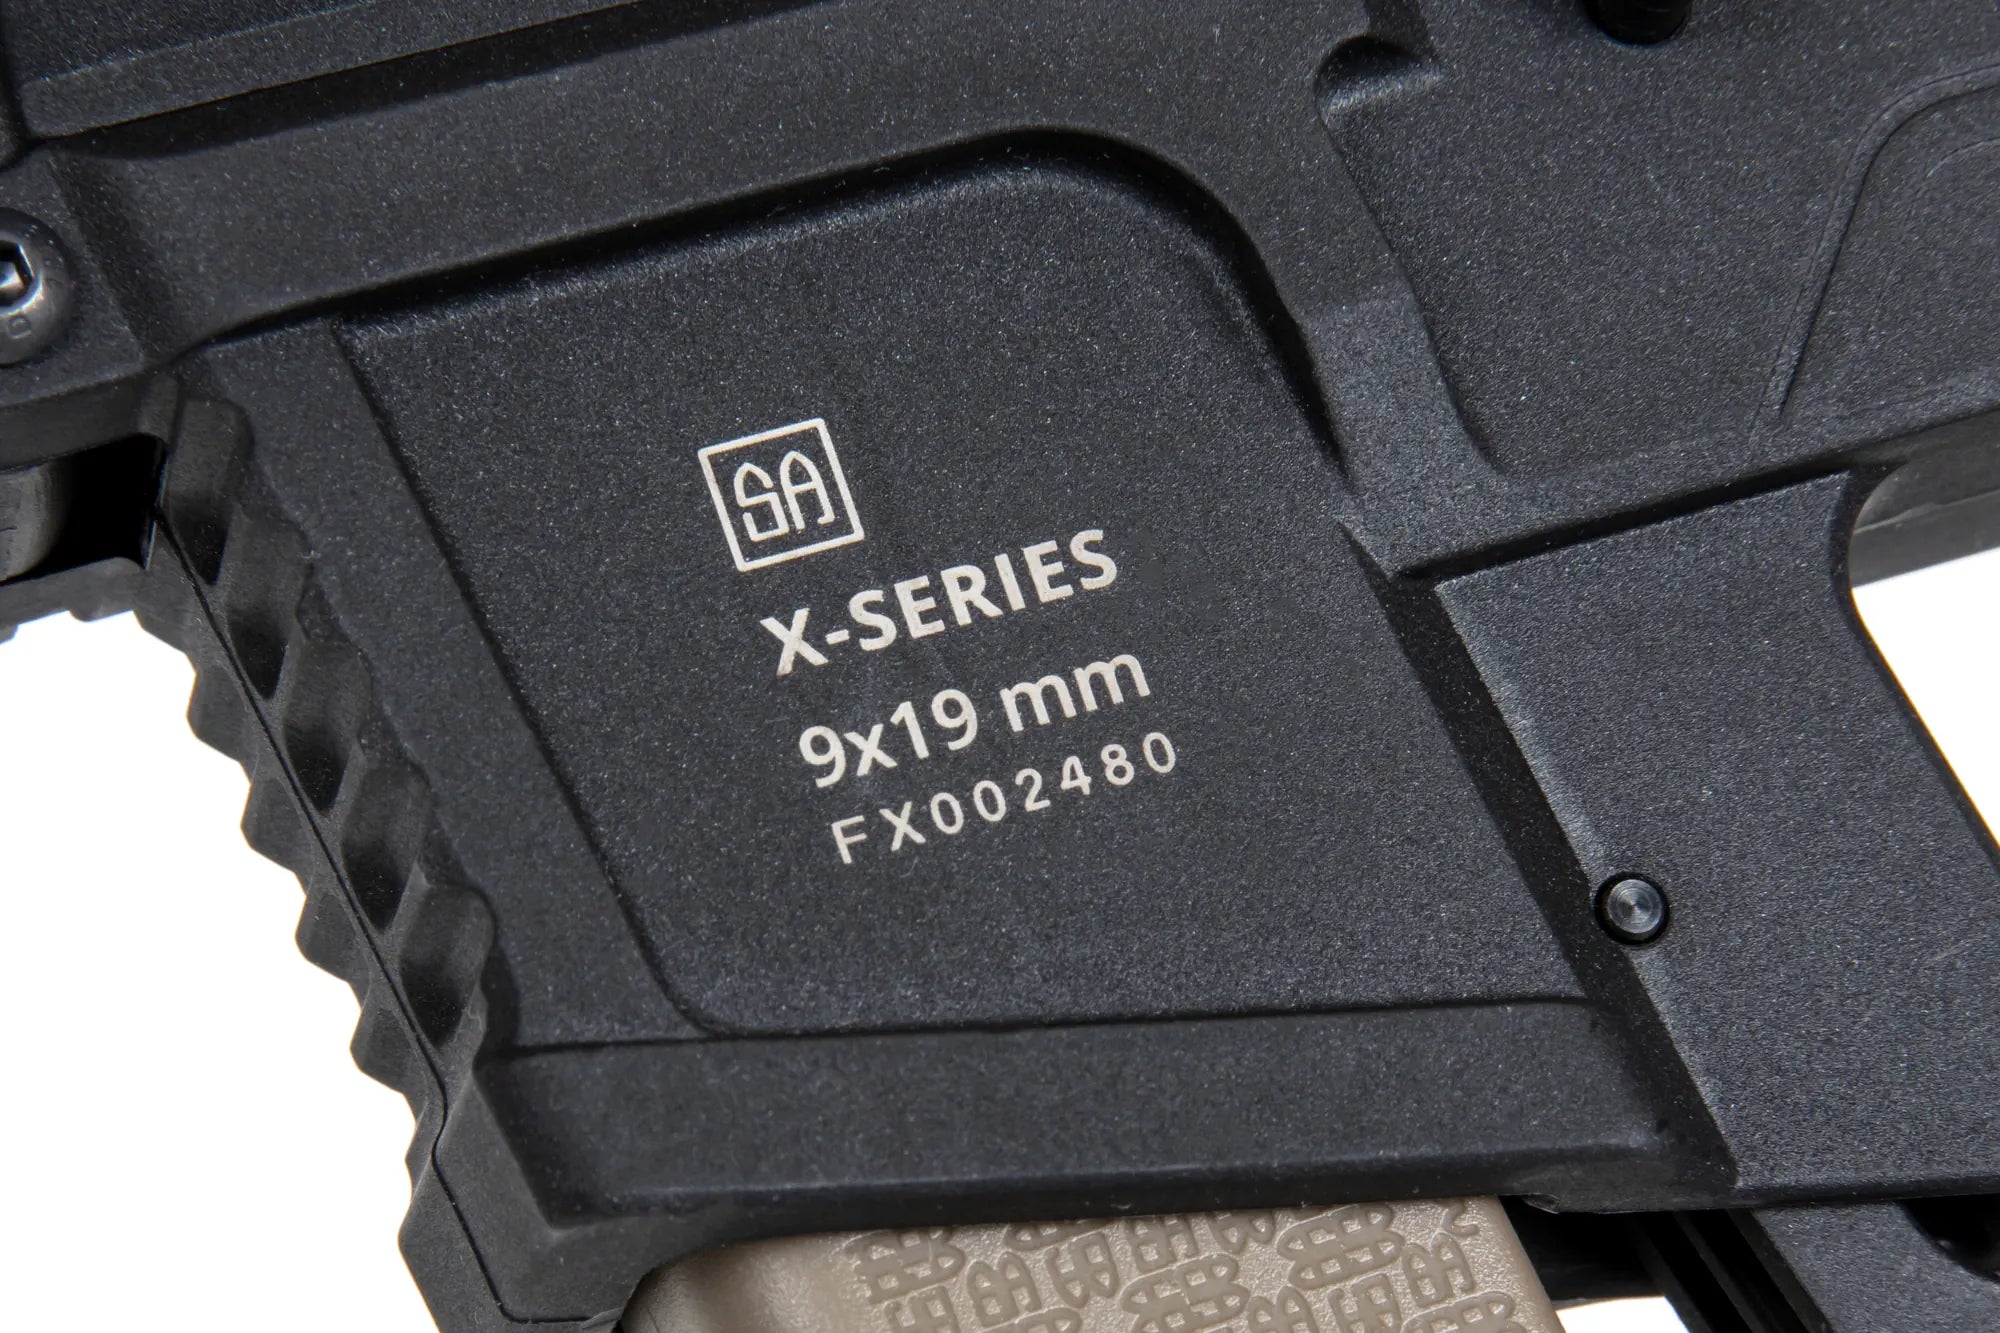 Replika pistoletu maszynowego SA-FX01 FLEX™ Half-Tan-4